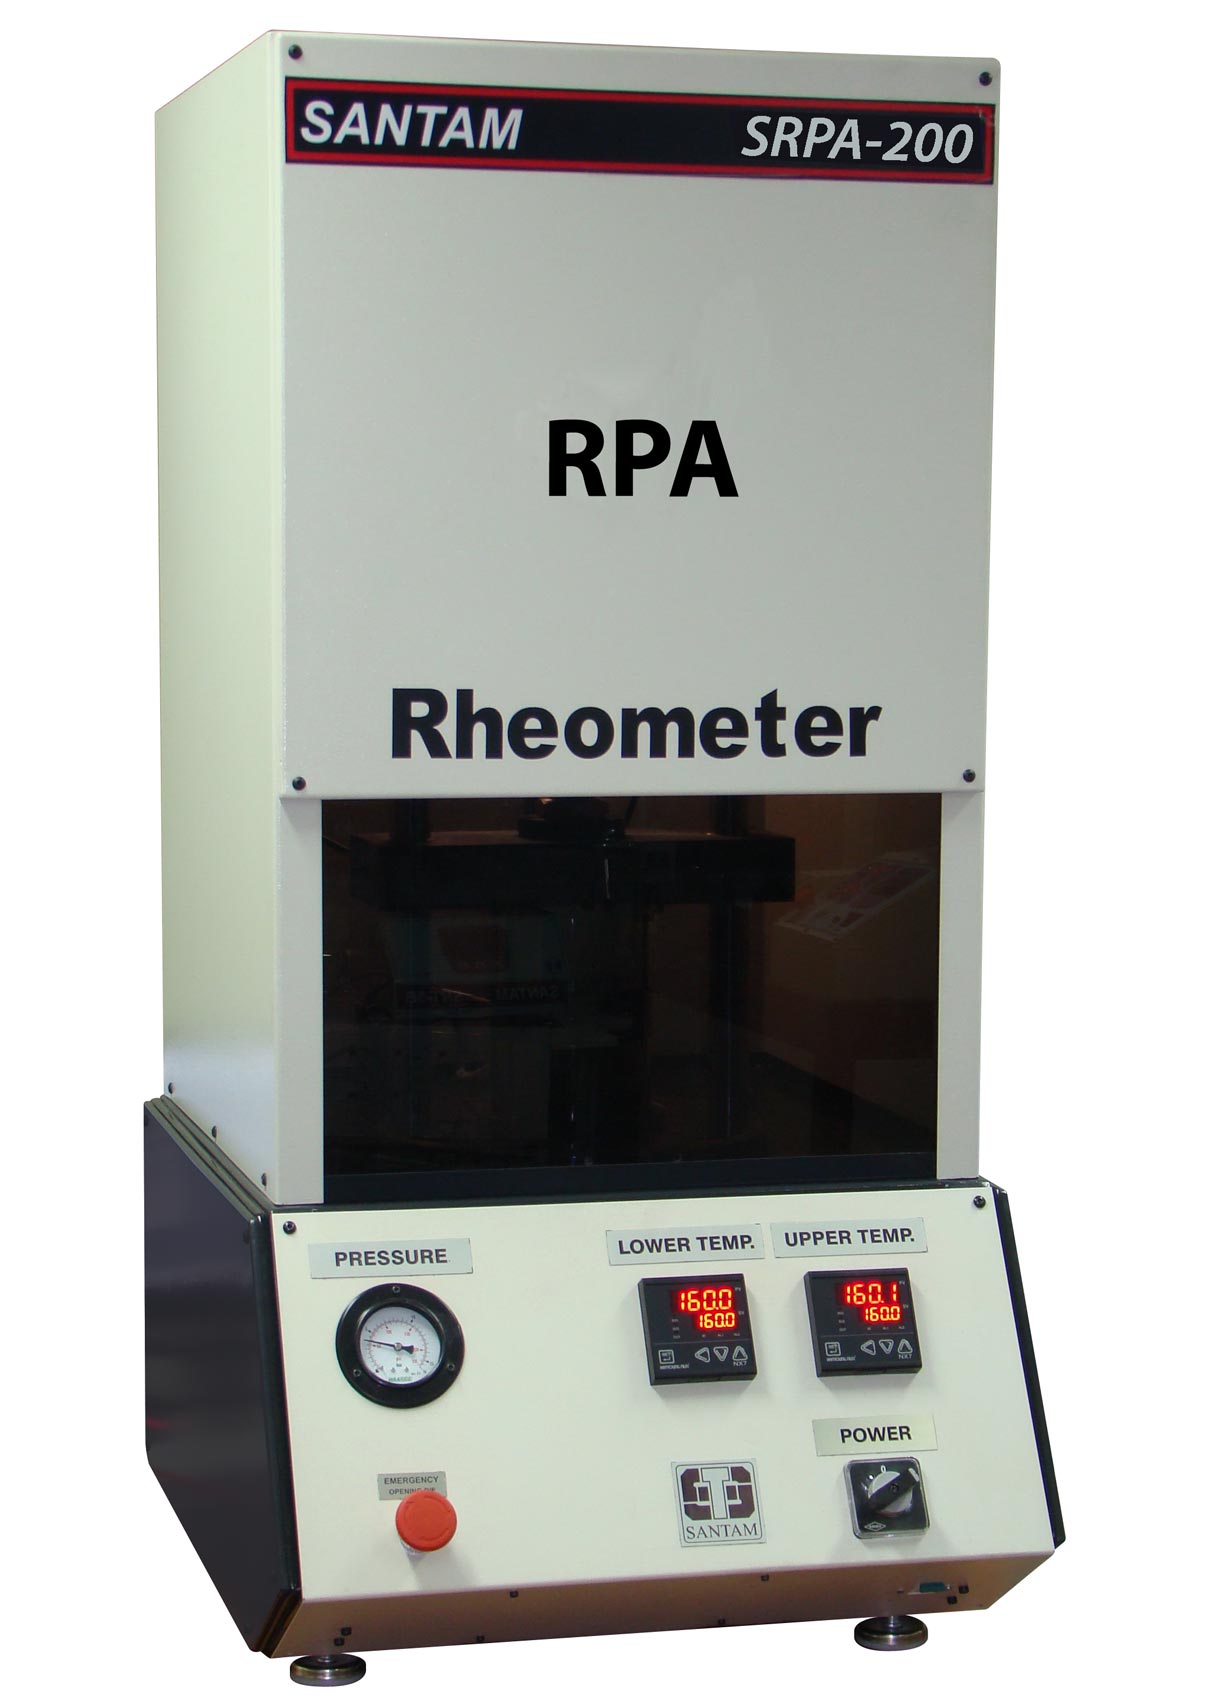 دستگاه رئومتر RPA  تحقیقاتی -RPA Rheometer